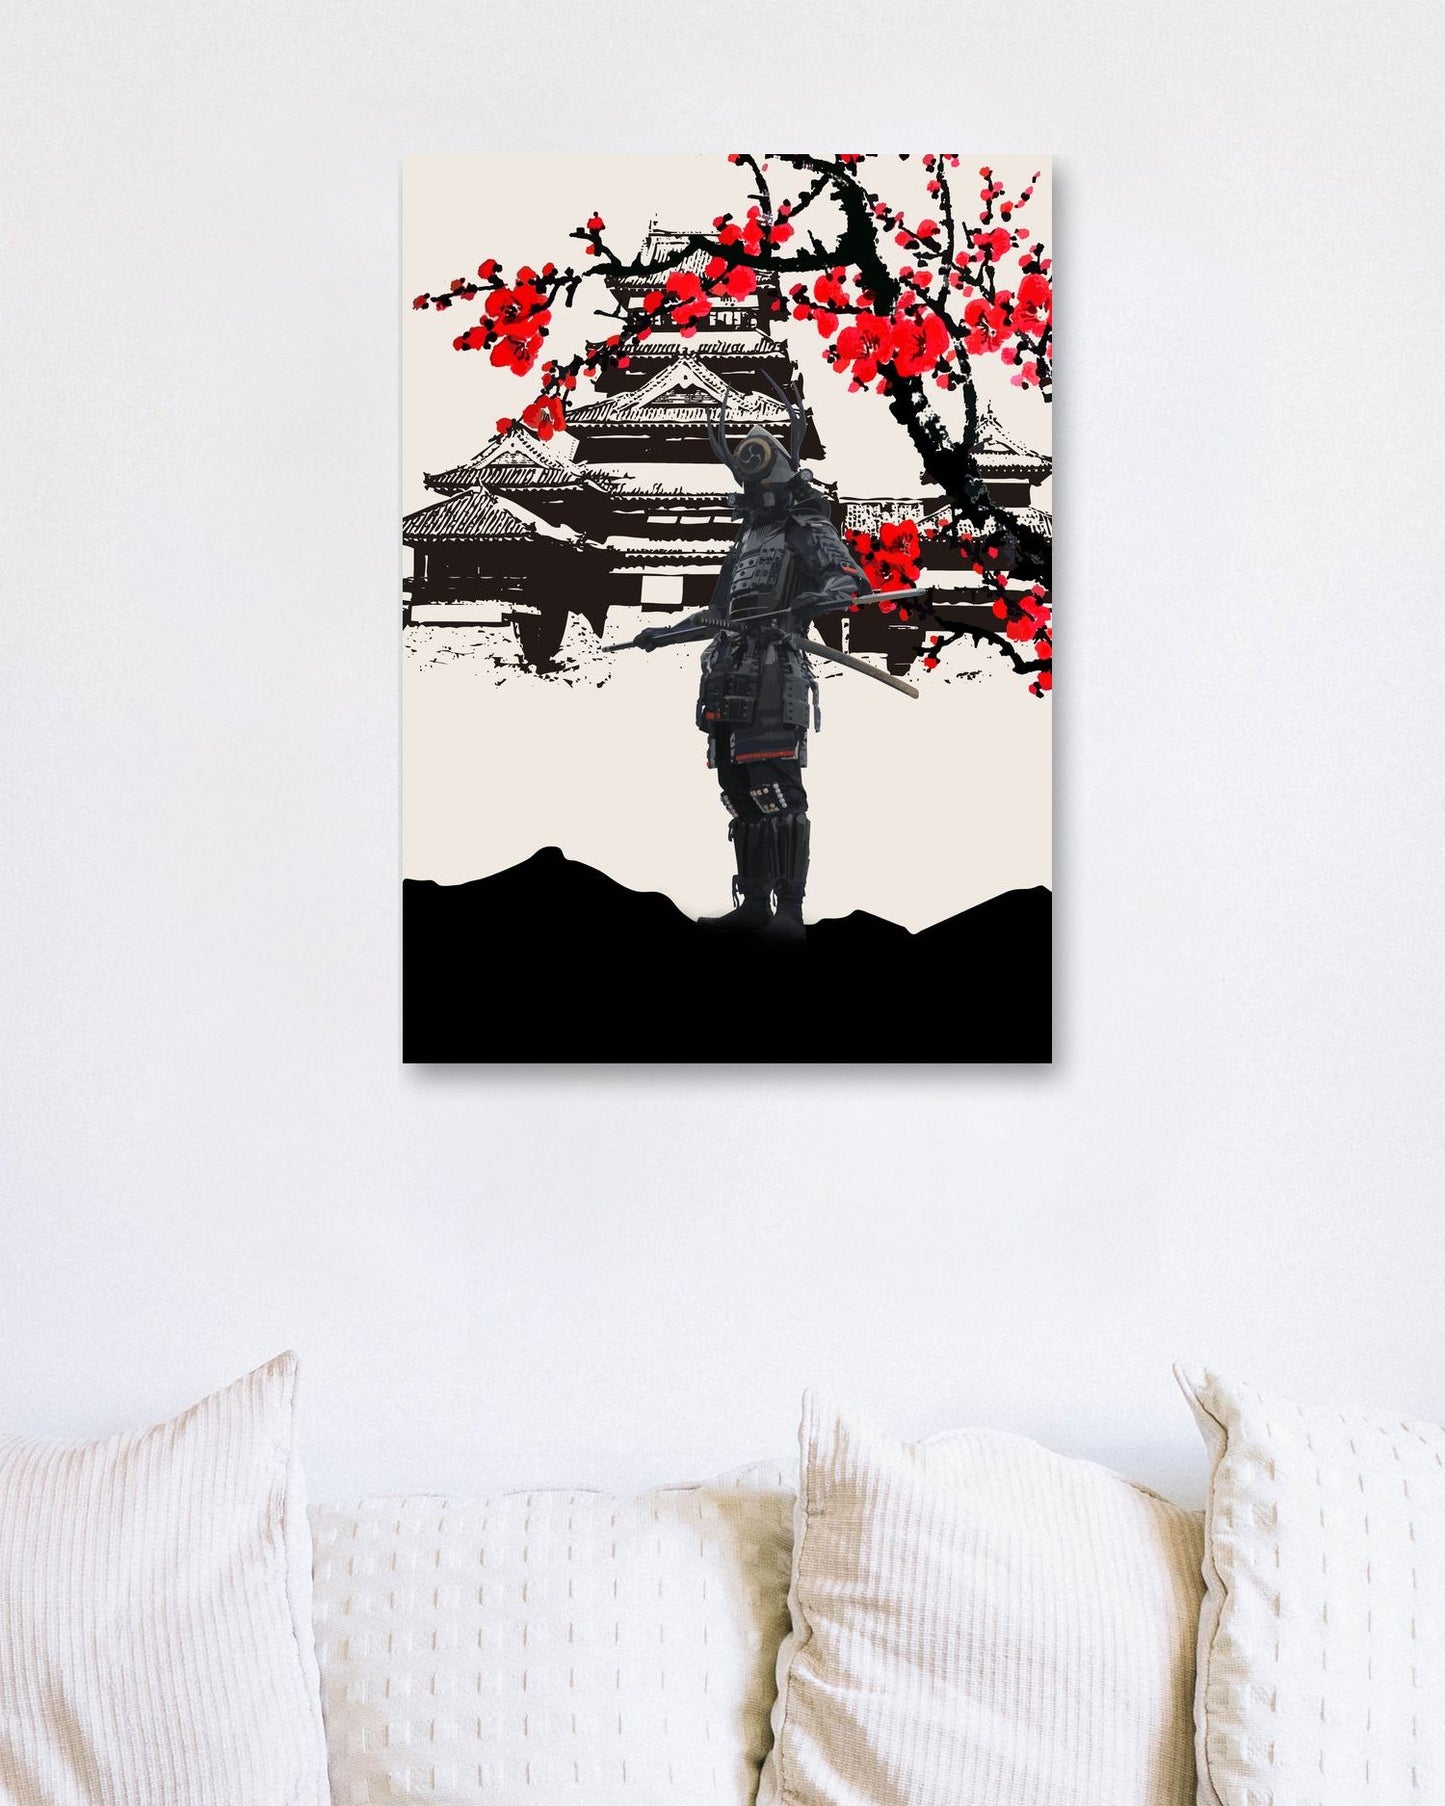 Samurai Japan10 - @AzlanXavier